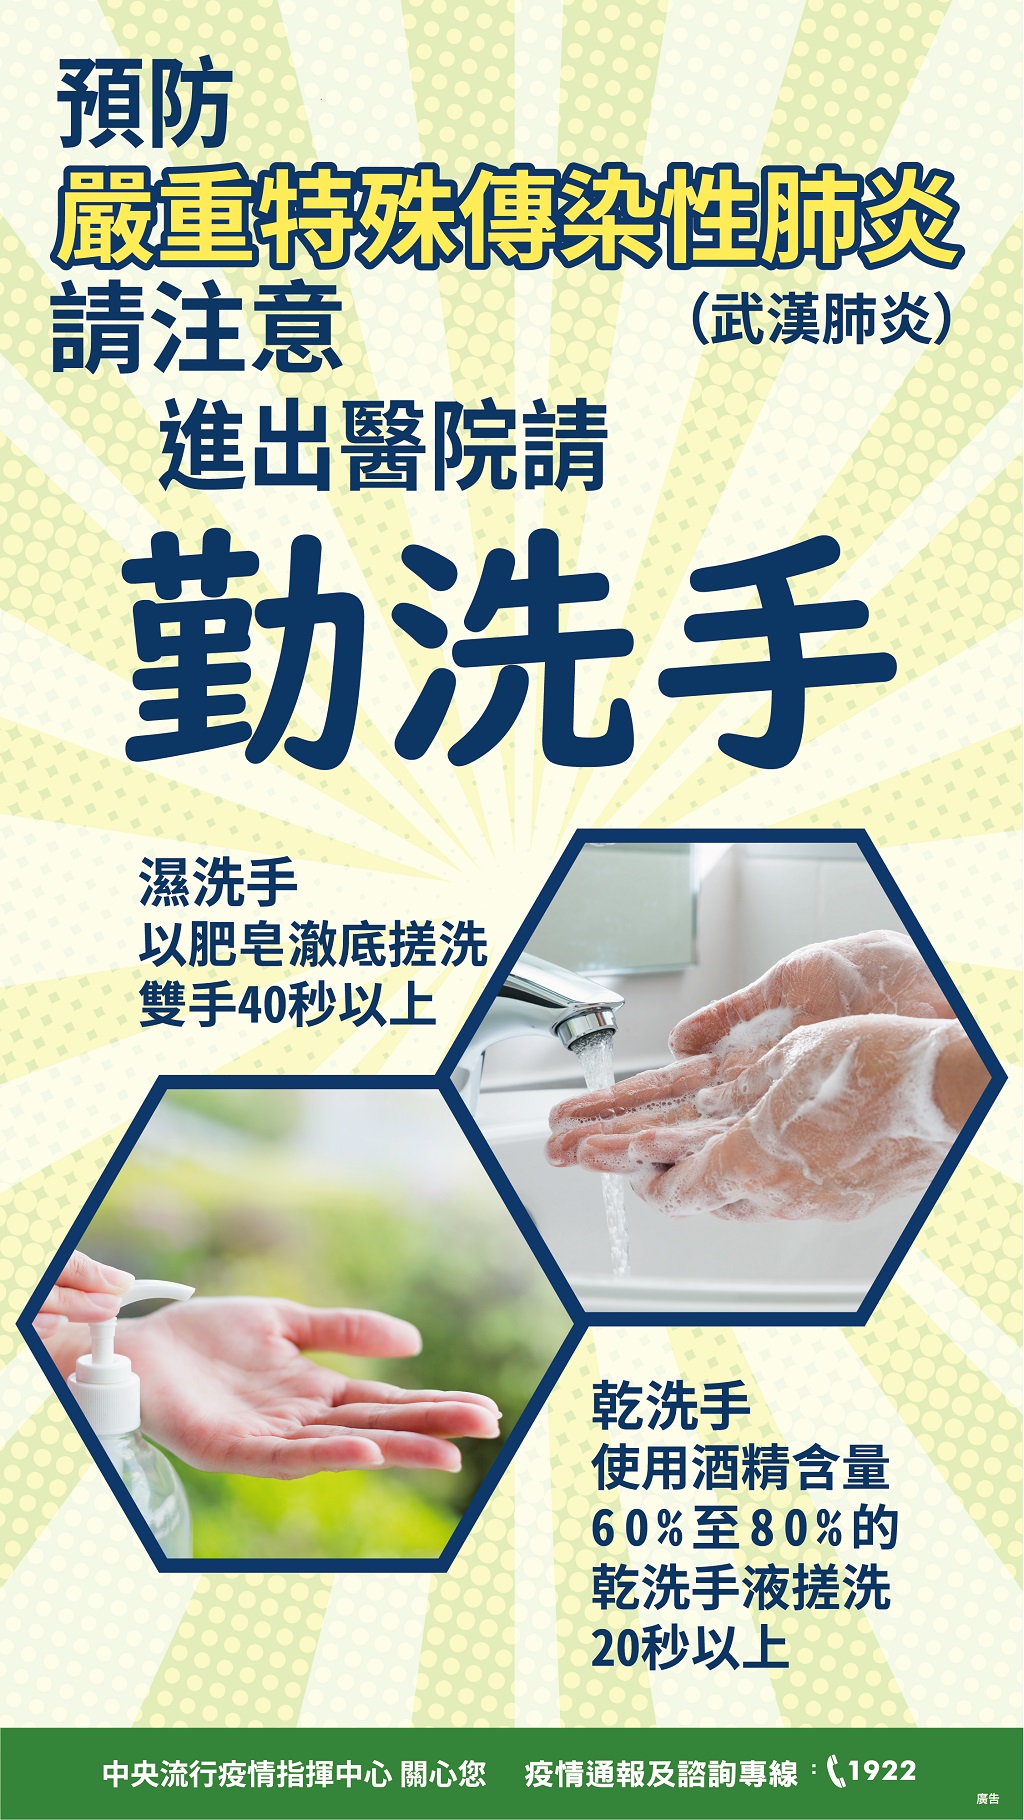 預防嚴重特殊傳染性肺炎 請注意洗手